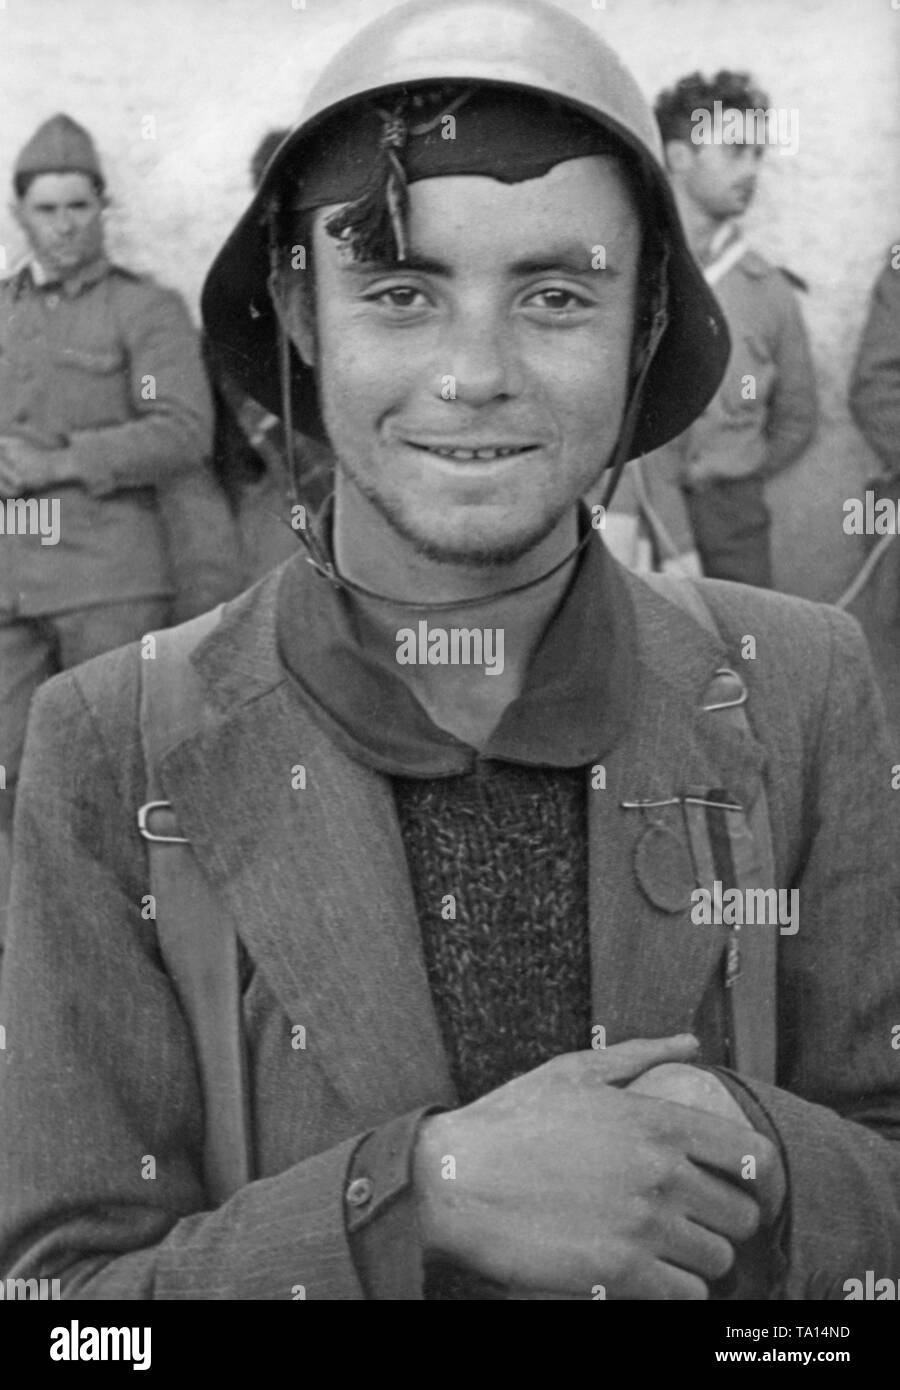 Portrait einer jungen Kämpfer des spanischen Nationalen Fraktion mit Stahlhelm, Abzeichen und Rucksack, Spanien, 1936. Stockfoto